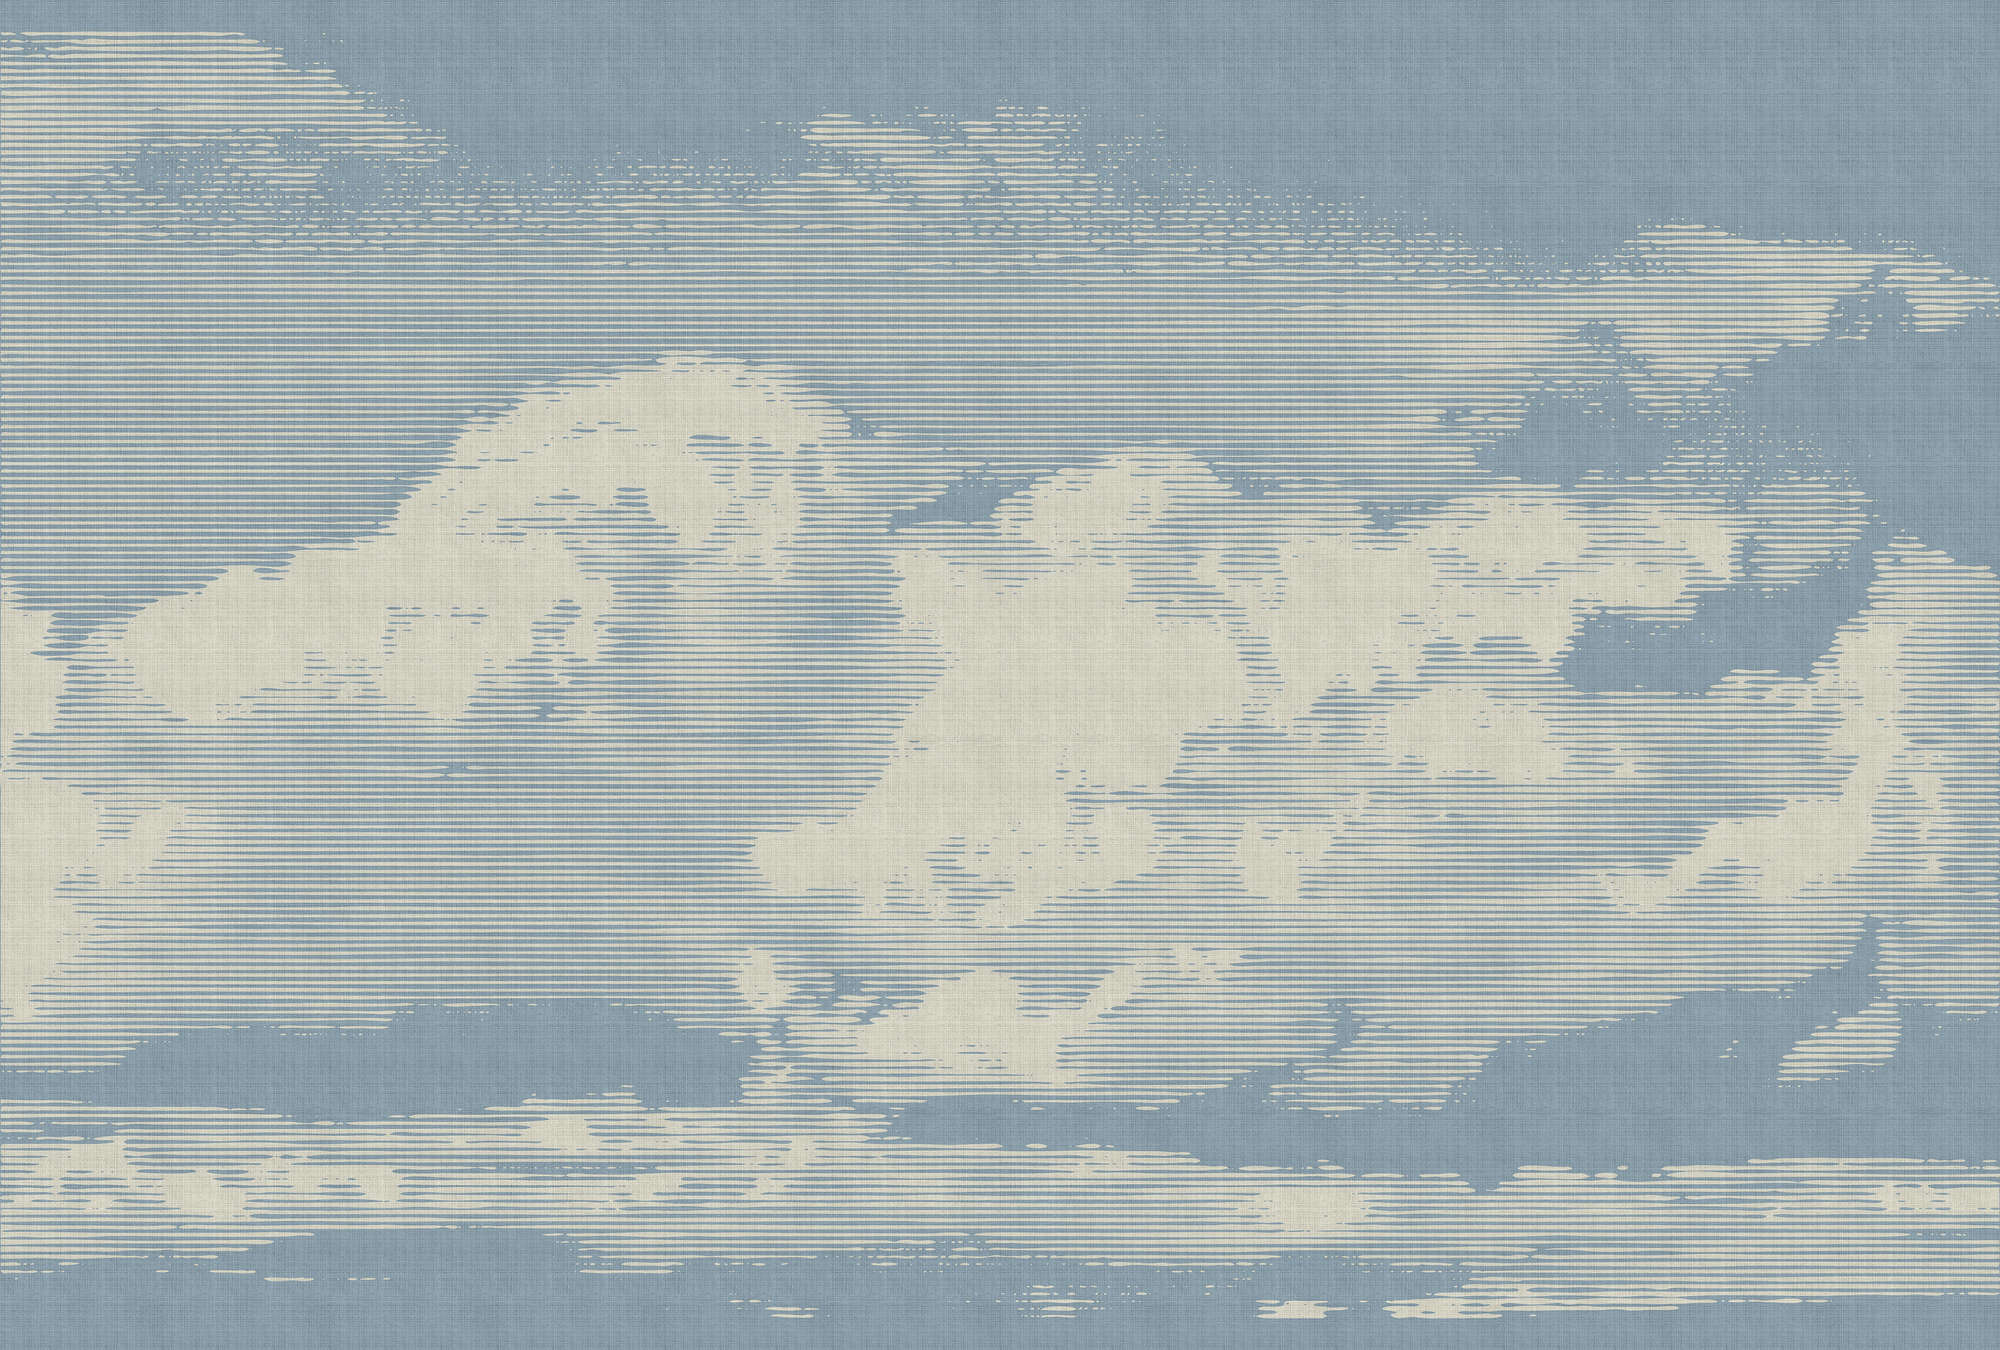             Clouds 1 - Carta da parati con motivo a nuvole in lino naturale - Beige, Blu | Vello liscio di prima qualità
        